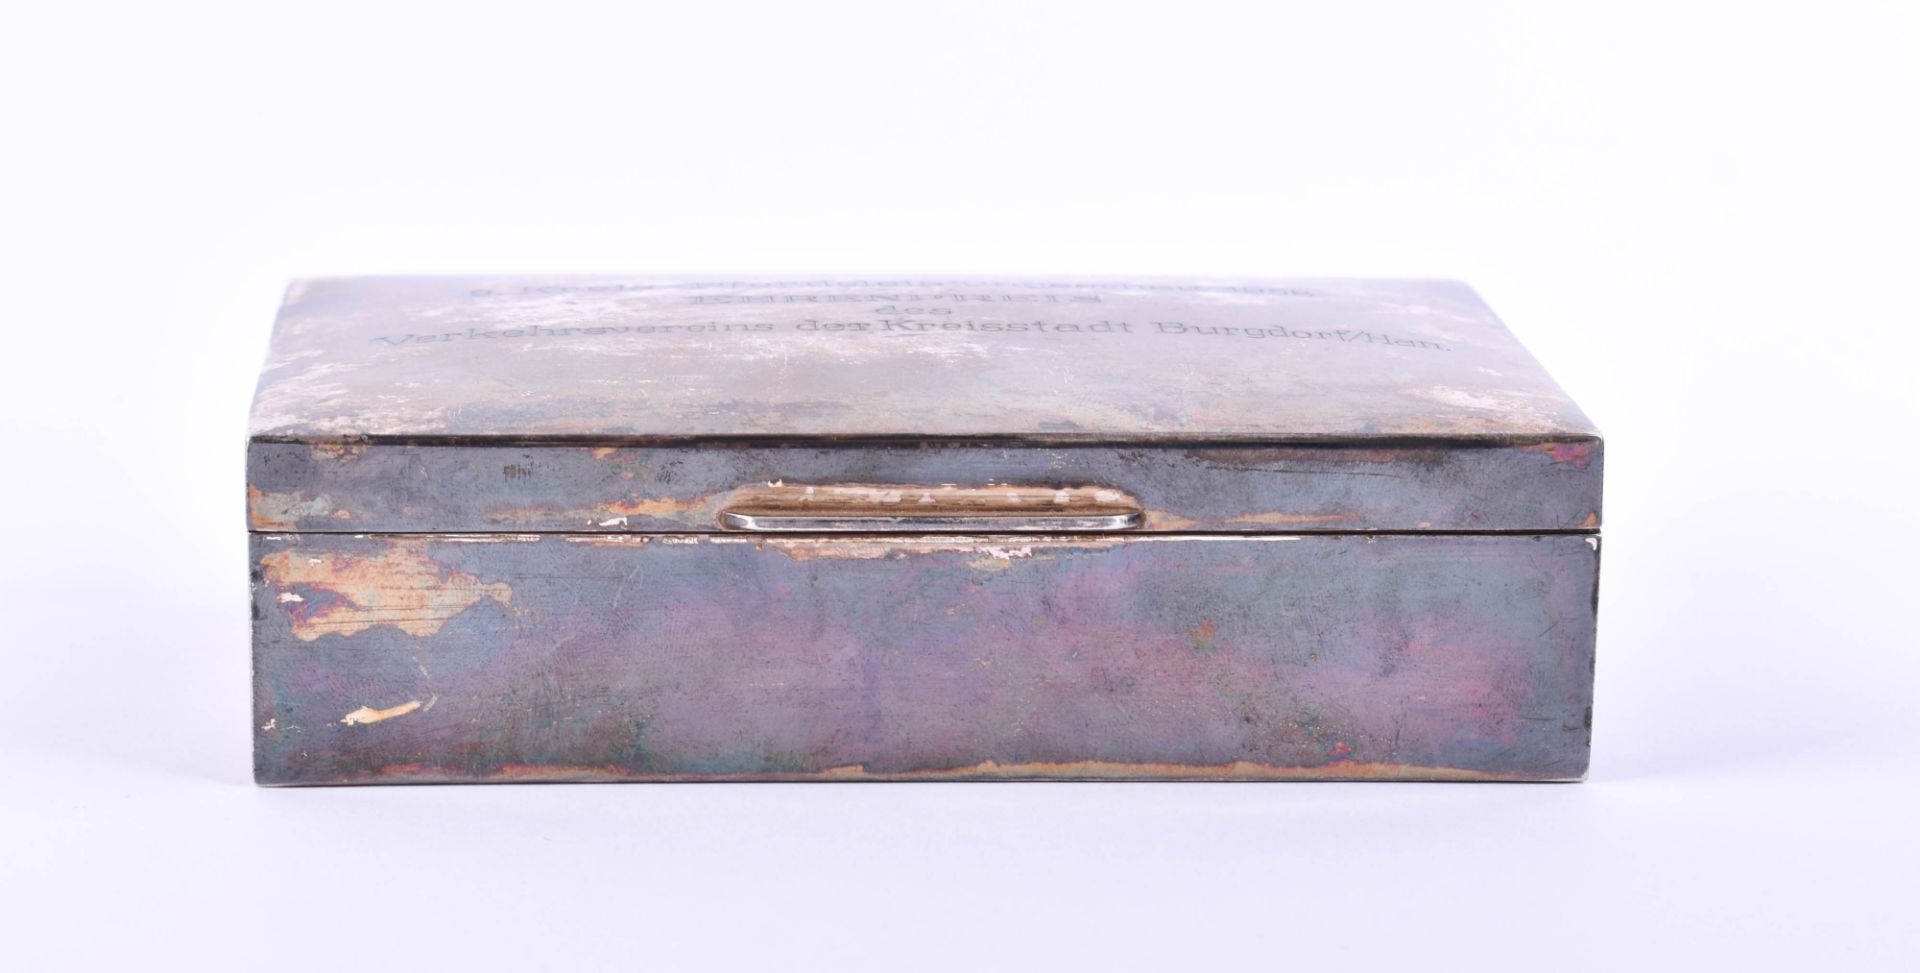  Cigar box silver - Image 2 of 7